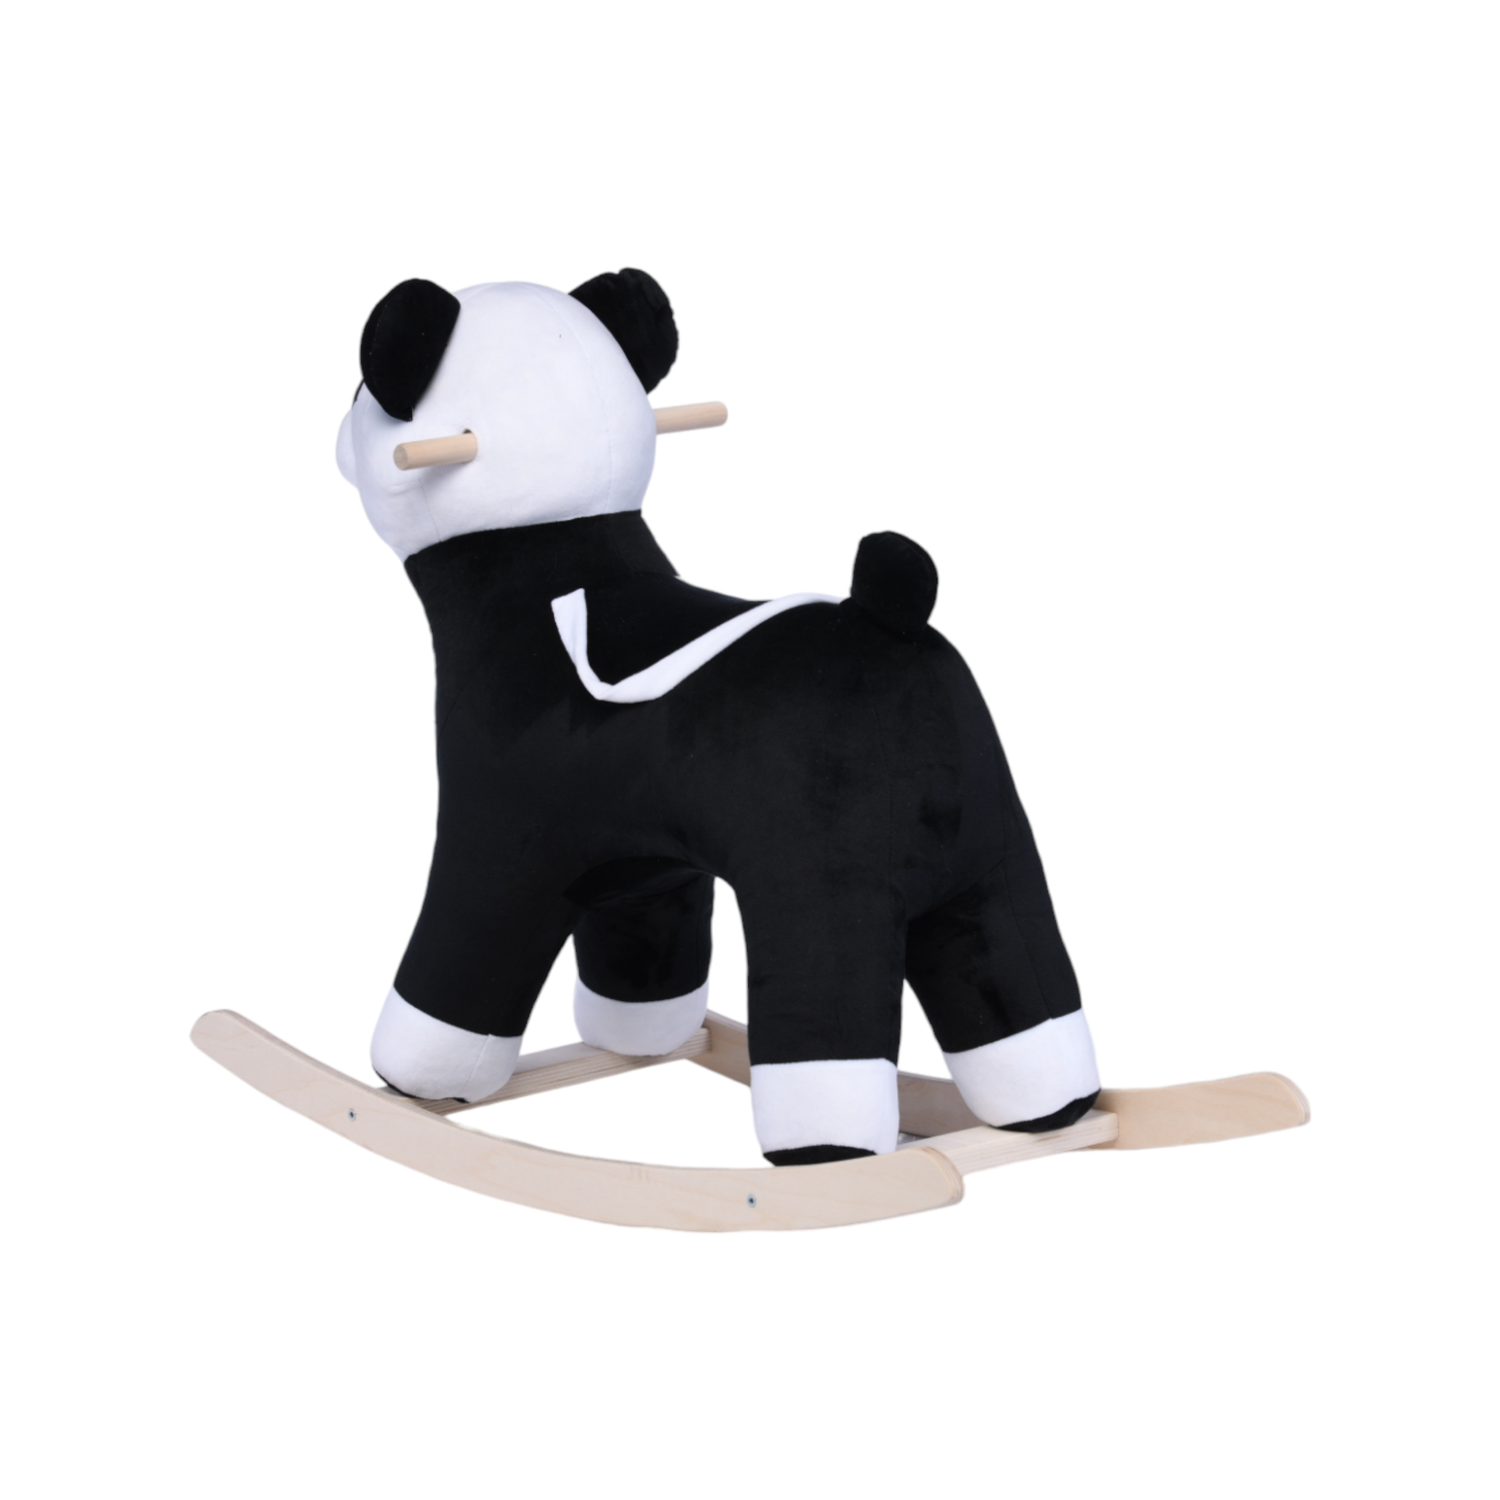 Качалка Нижегородская игрушка Панда - фото 7